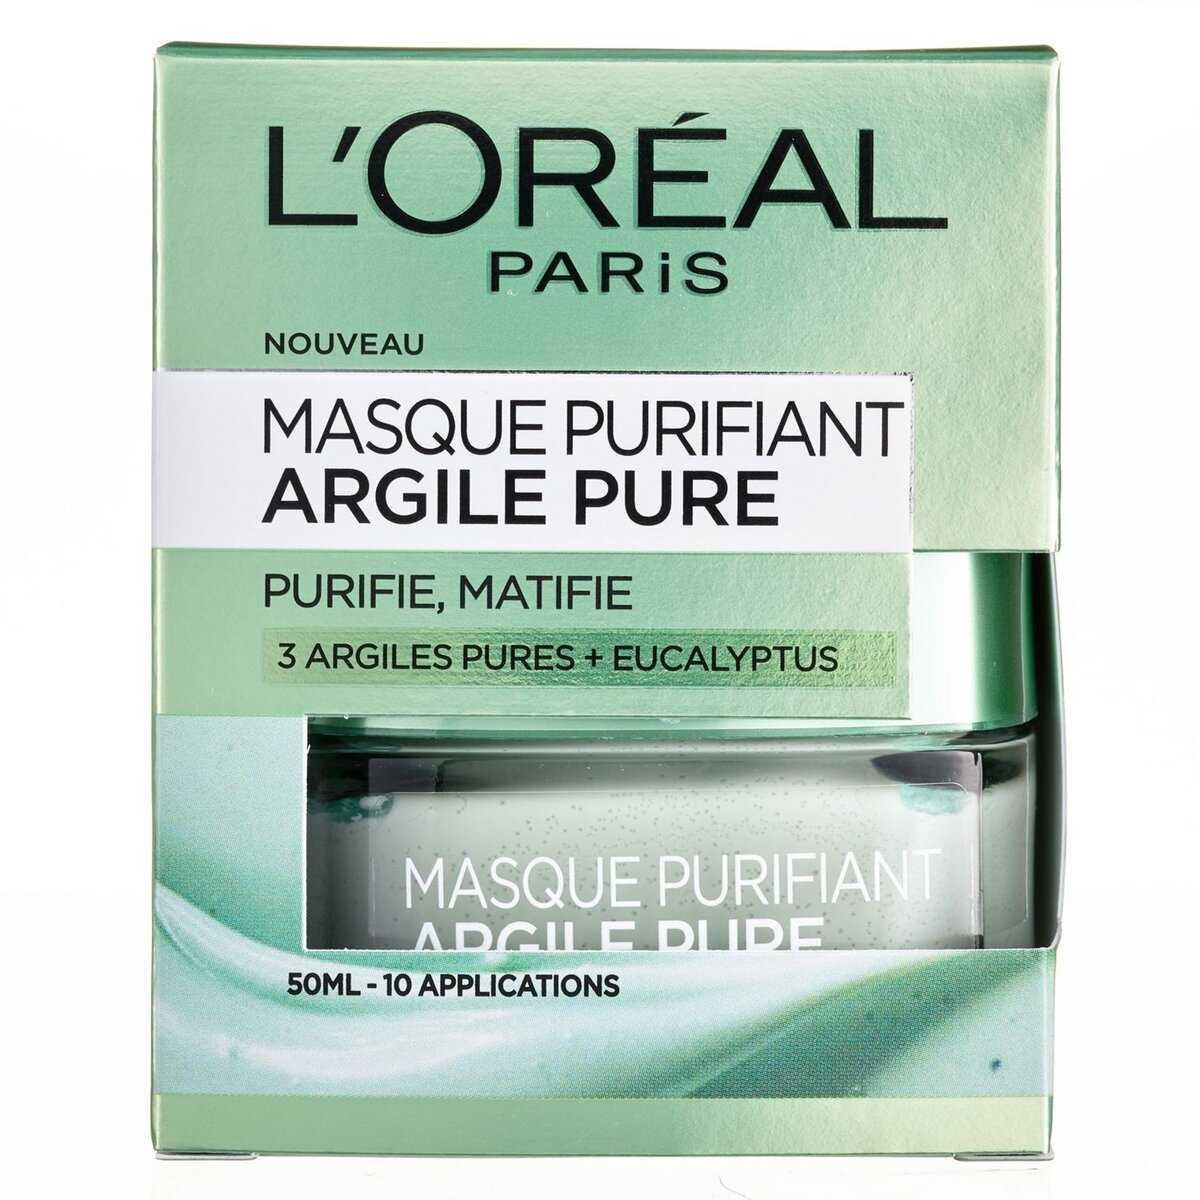 L'OREAL Masque purifiant aux 3 argiles pures + eucalyptus 50ml